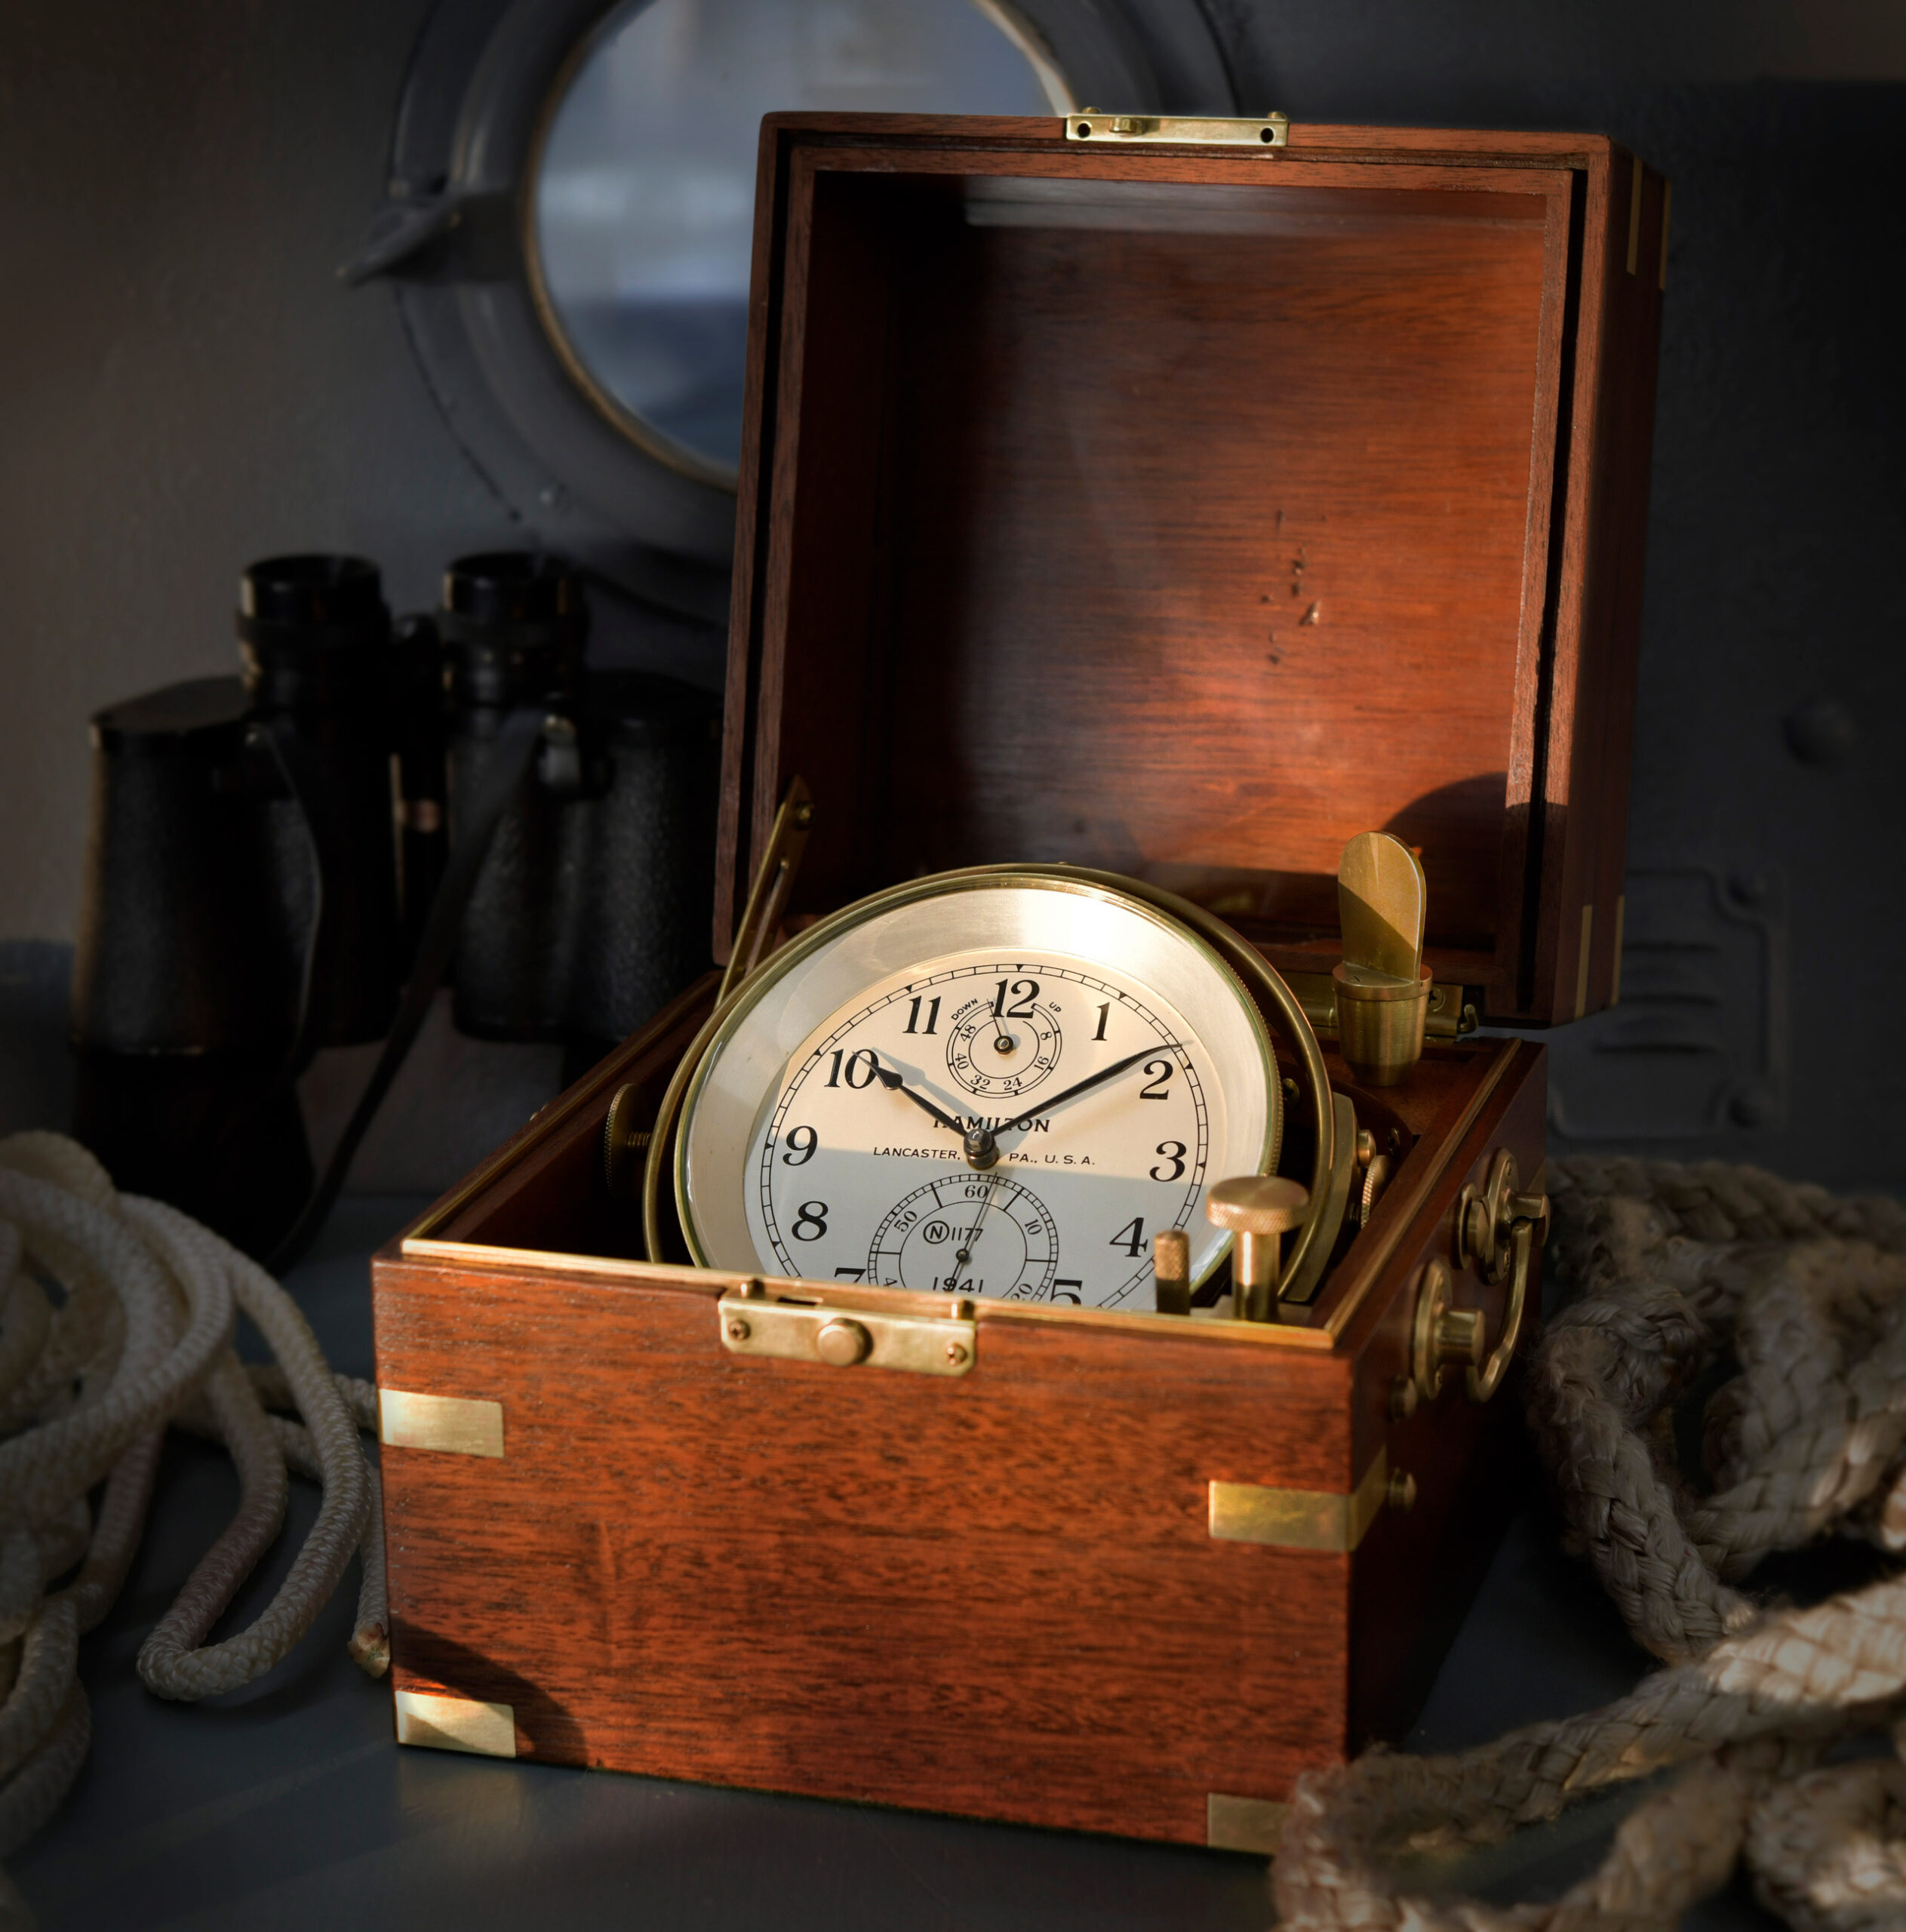 Hamilton marine chronometer model 21 from 1941